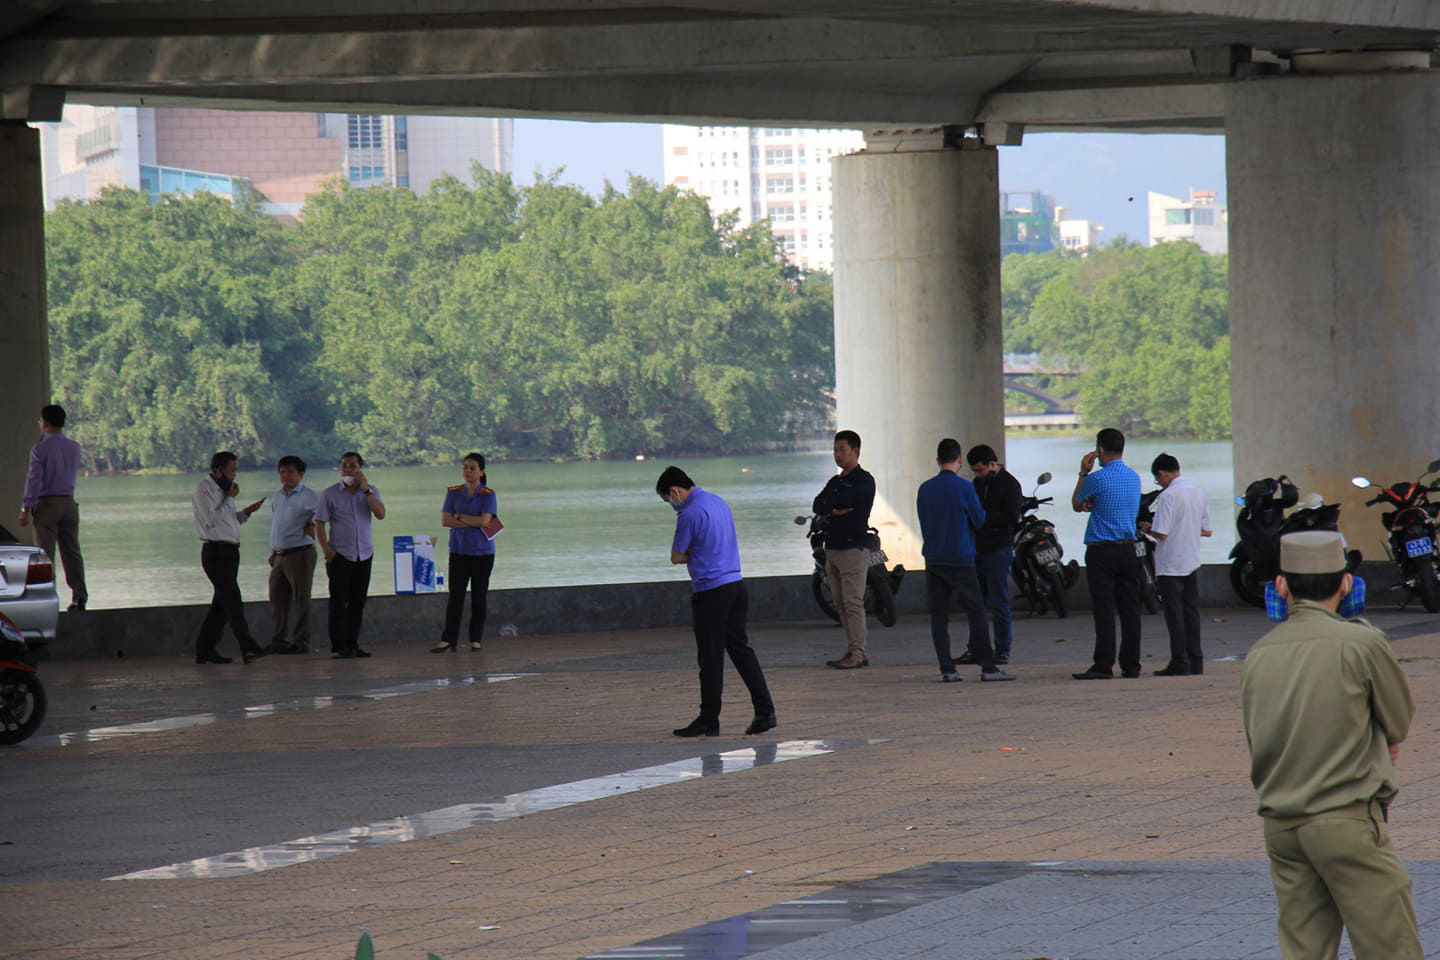 PGĐ Công an Đà Nẵng kể lại hành trình truy bắt nghi phạm chặt xác cô gái rồi phi tang xuống sông Hàn - Ảnh 5.